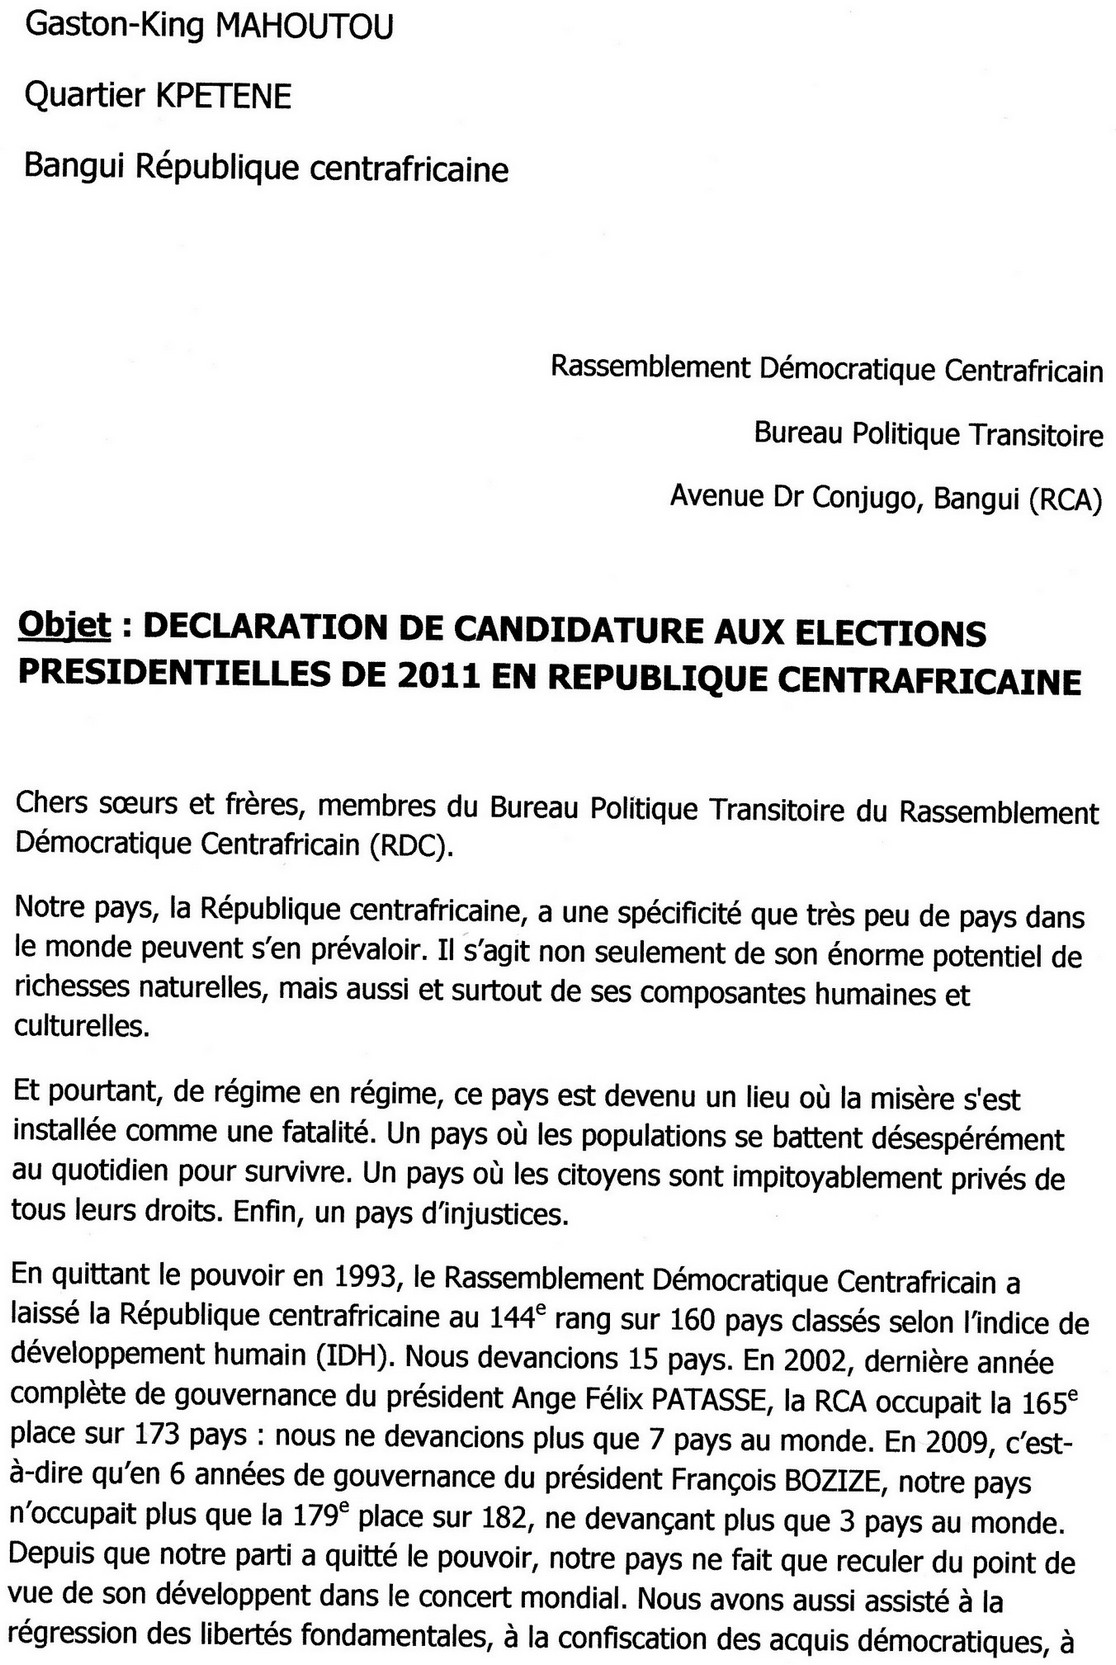 Gaston-King MAHOUTOU: DECLARATION DE CANDIDATURE AUX ELECTIONS PRESIDENTIELLES DE 2011 EN REPUBLIQUE CENTRAFRICAINE Part1